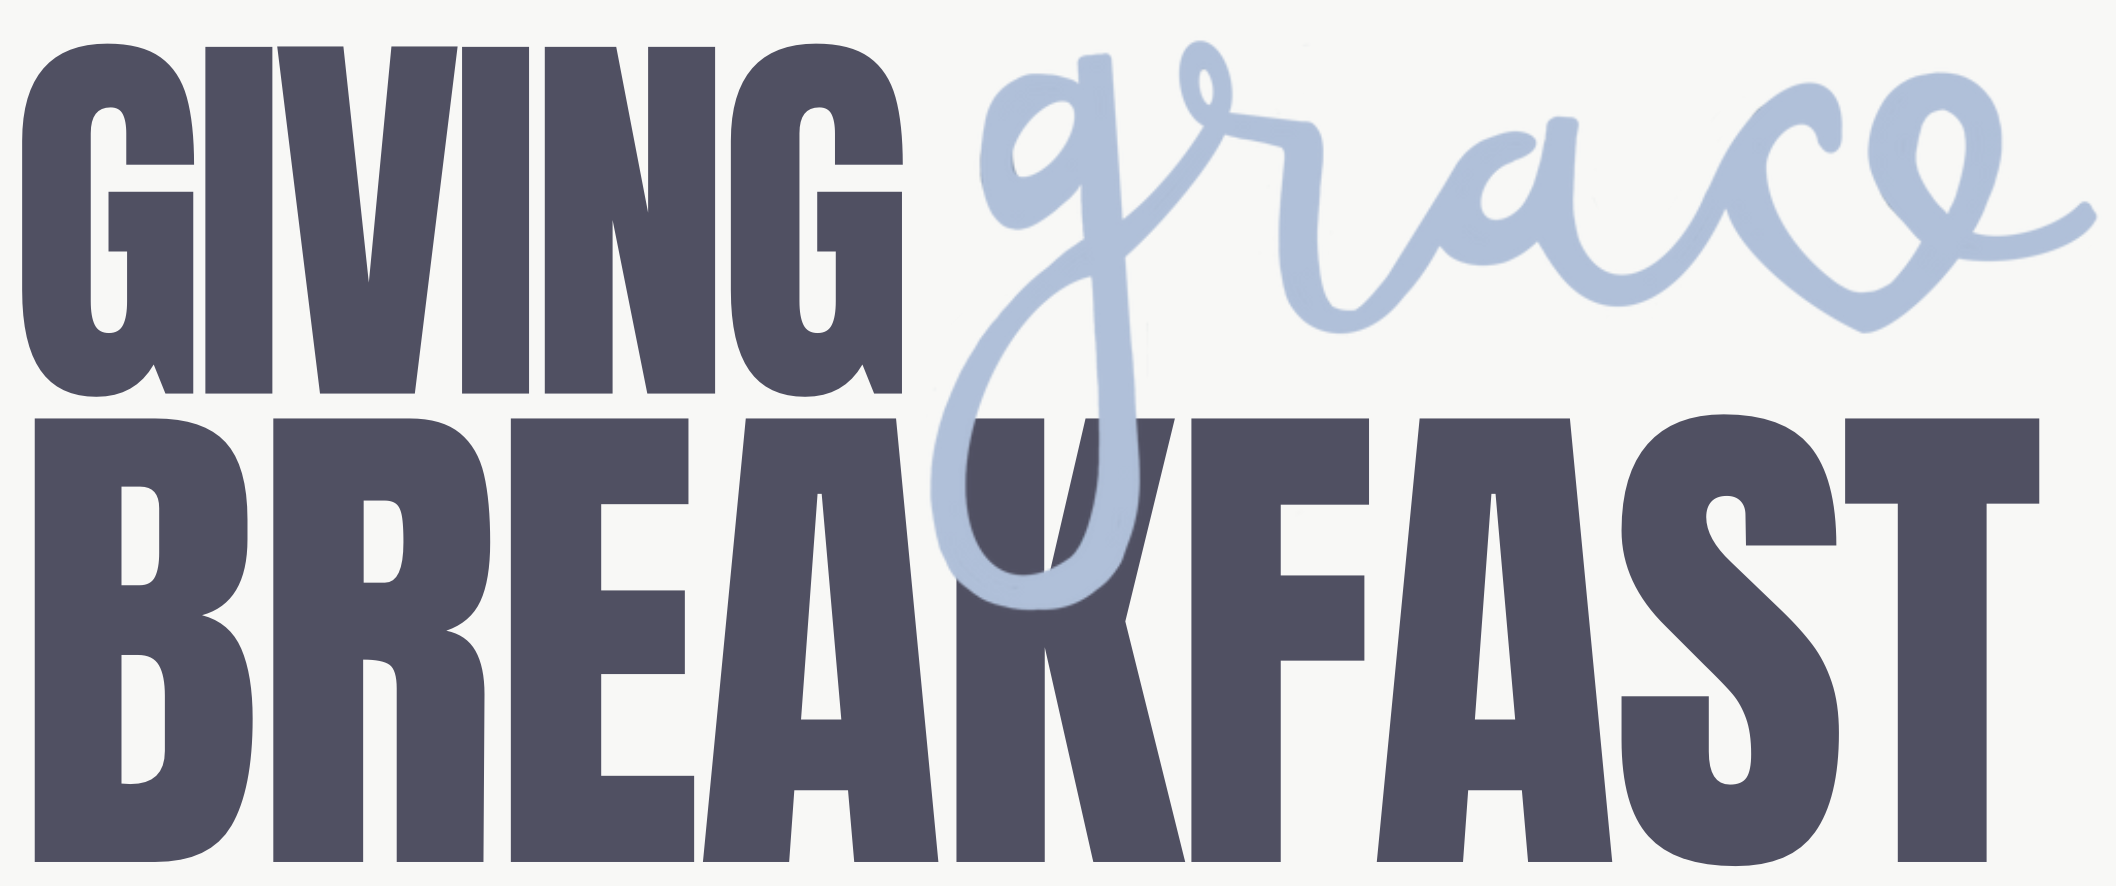 giving-grace-breakfast